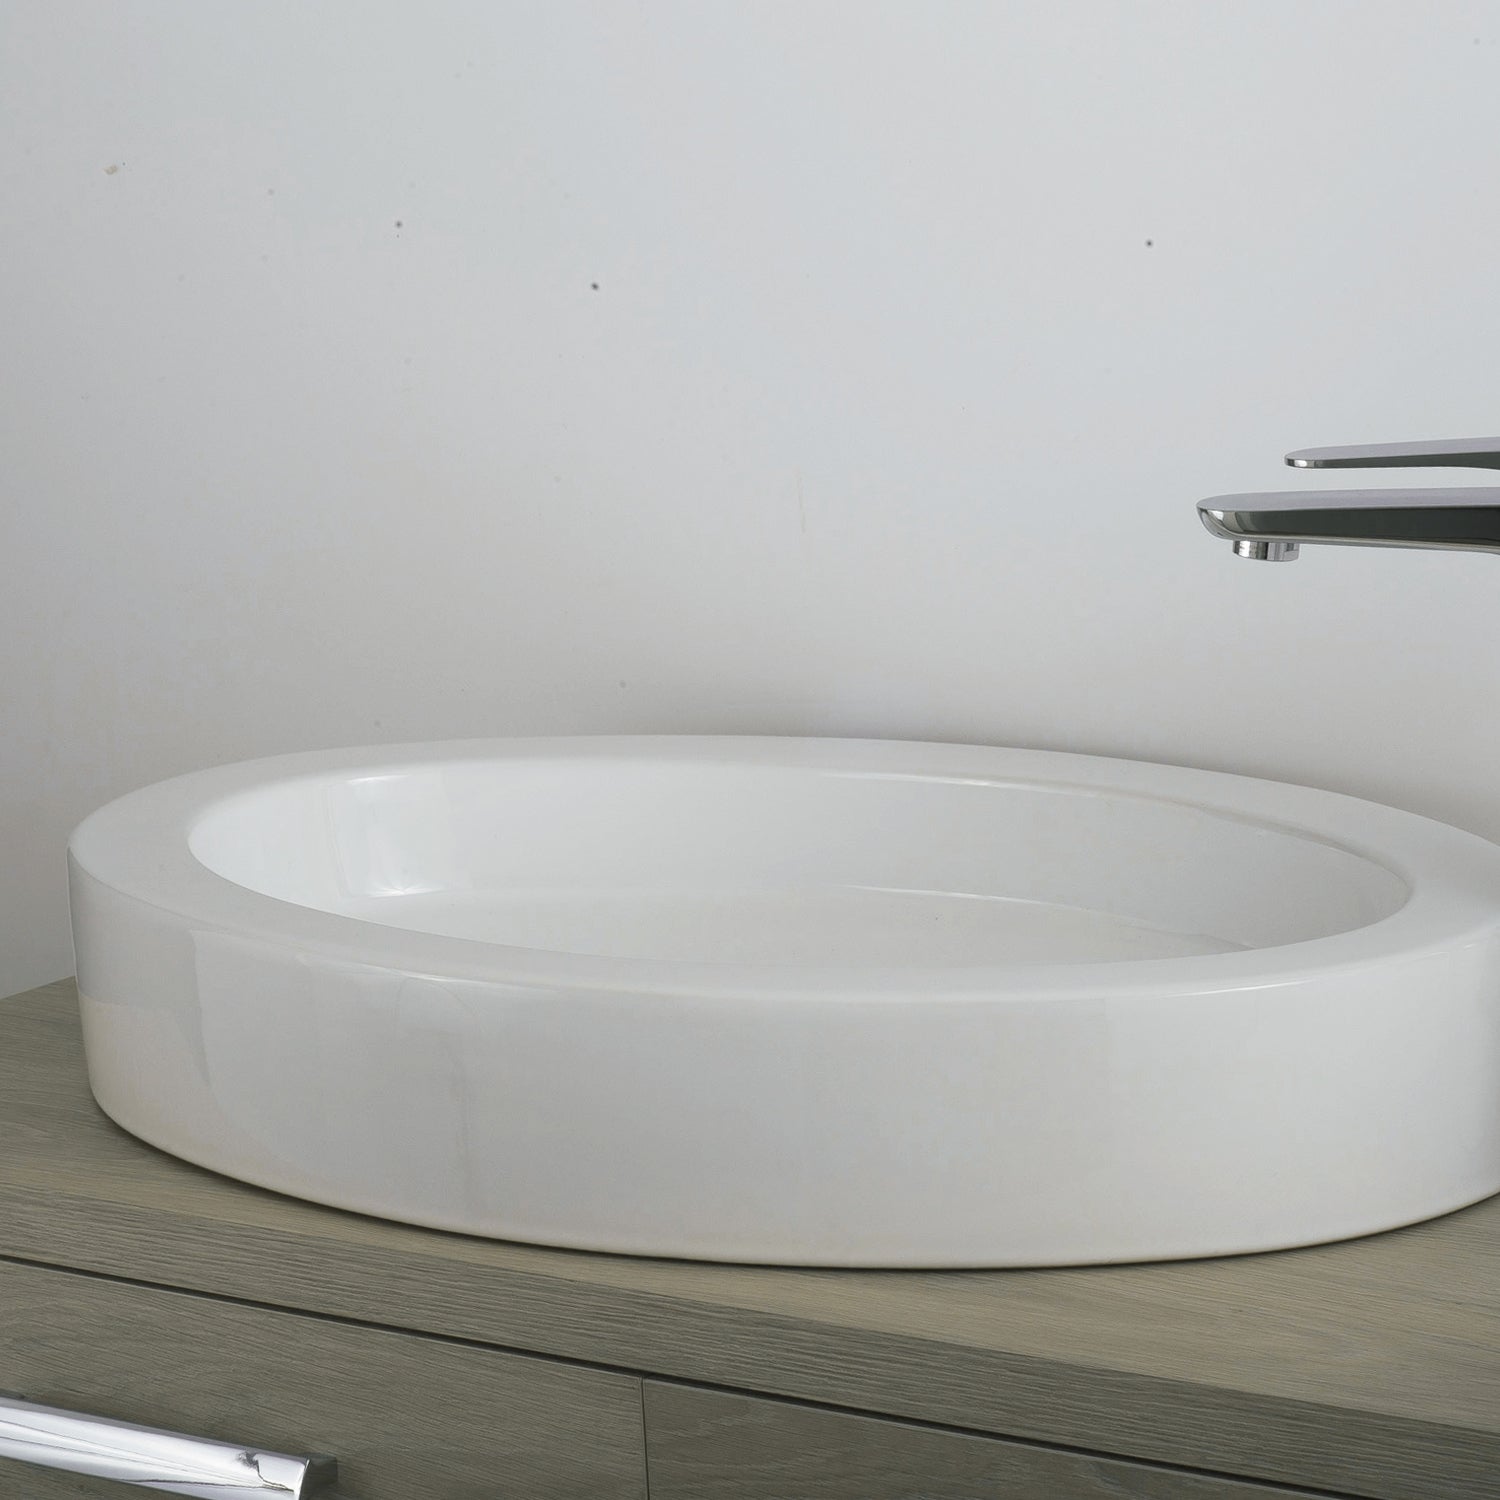 DAX Lavabo ovalado de cerámica para baño de un solo tazón, acabado blanco, 25 x 16-1/3 x 3-1/2 pulgadas (BSN-CL1219)